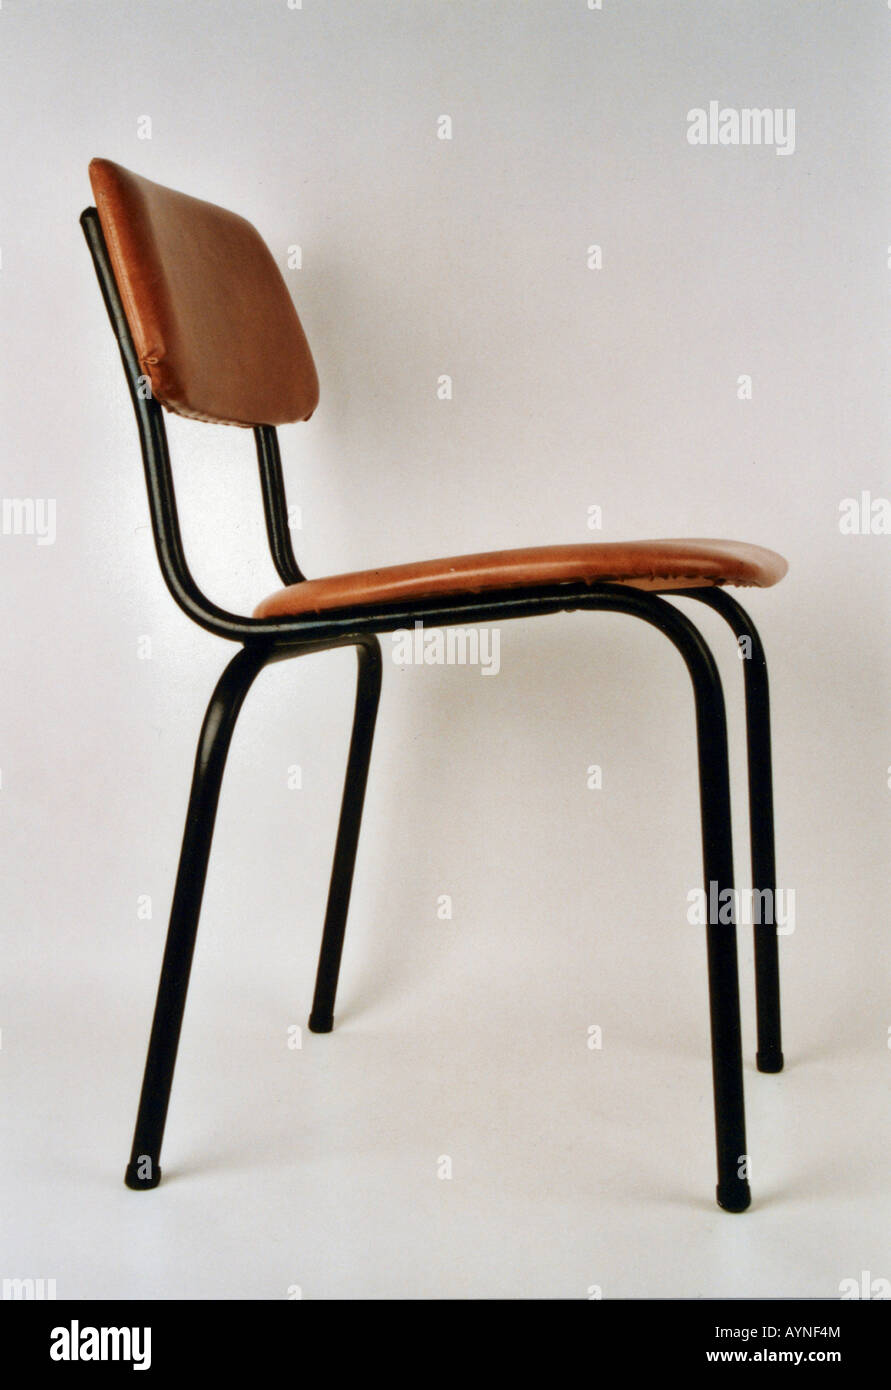 Einrichtung, Möbel, Stühle, stapelbarer Stuhl Typ 3101 mit Kunstleder (MSB 62), hergestellt vom Kombinat "Wilhelm Pieck" (MSB 62) des Kombinats Statima Stendal, DDR, 1959, 1960, Stockfoto